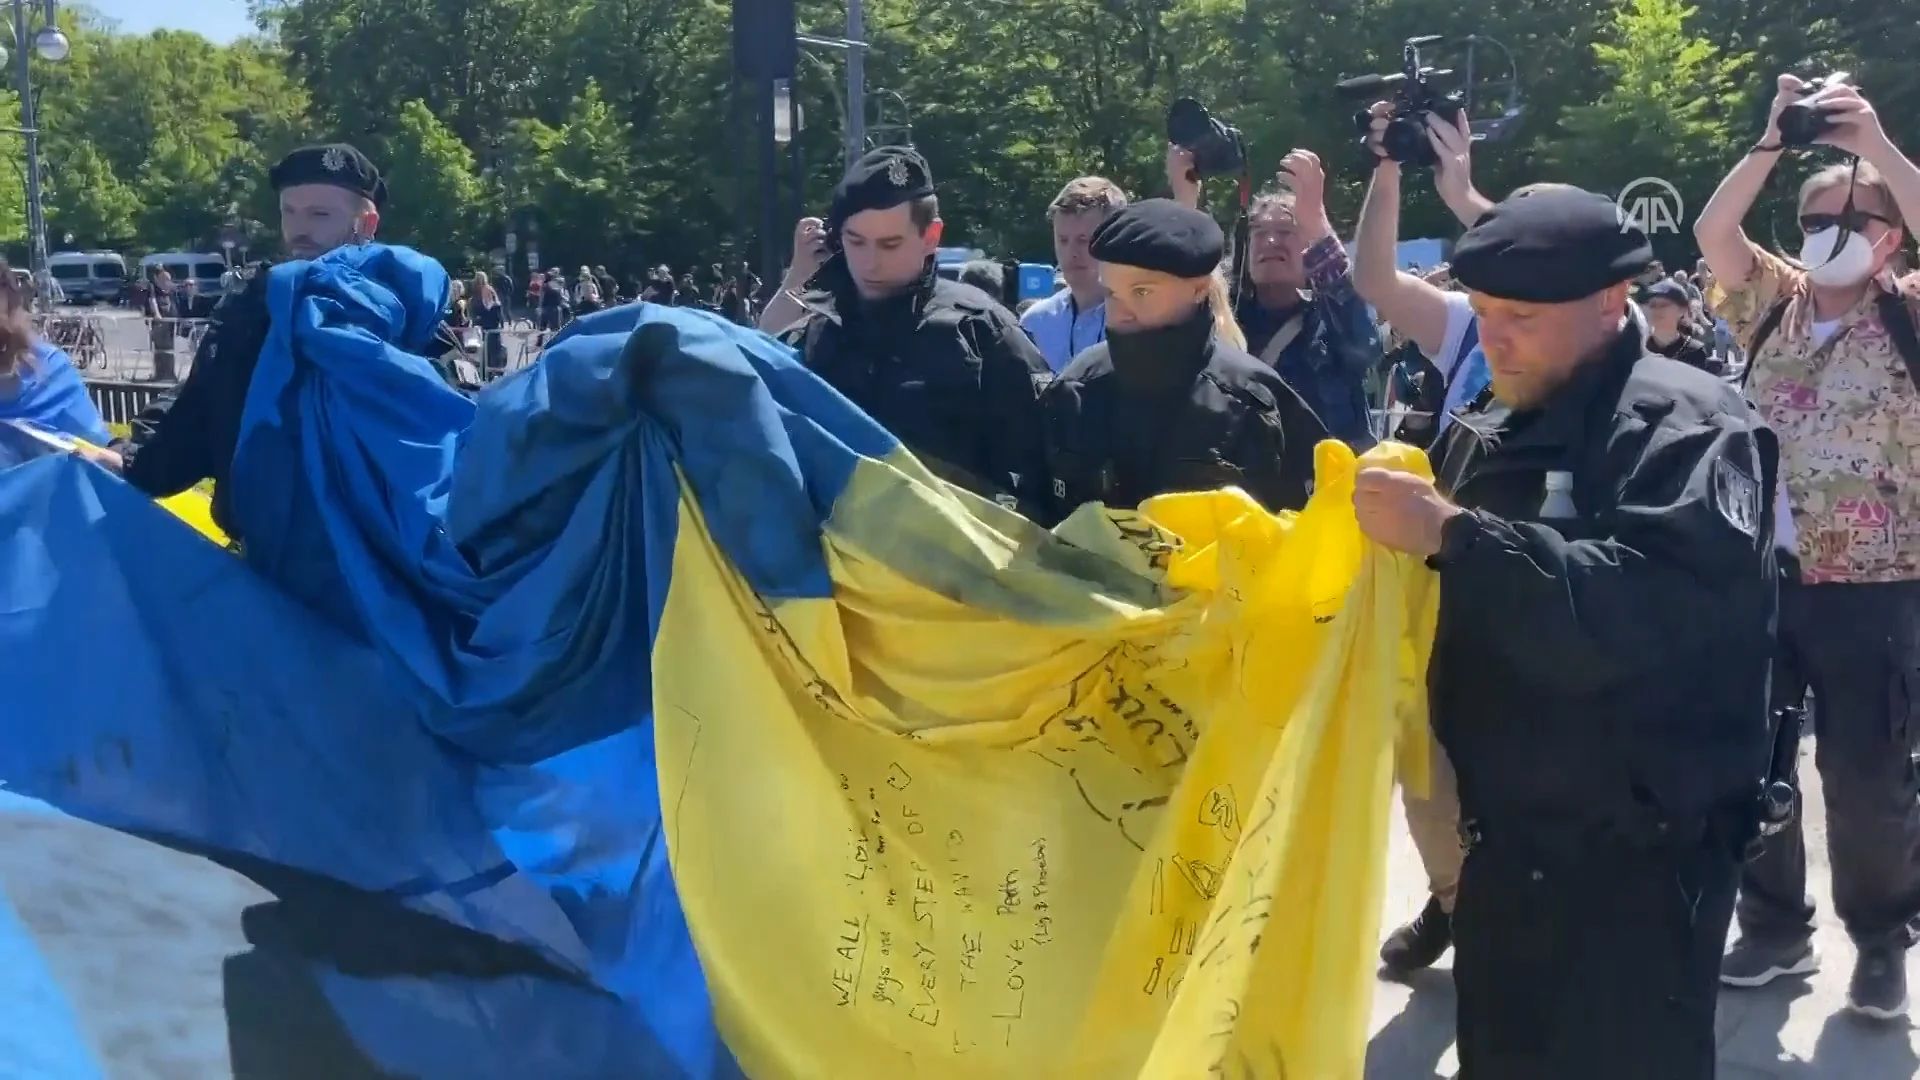 На меморіалі у Тіргартені кілька українців розгорнули прапор України. Але поліція Берліну одразу згорнула його.